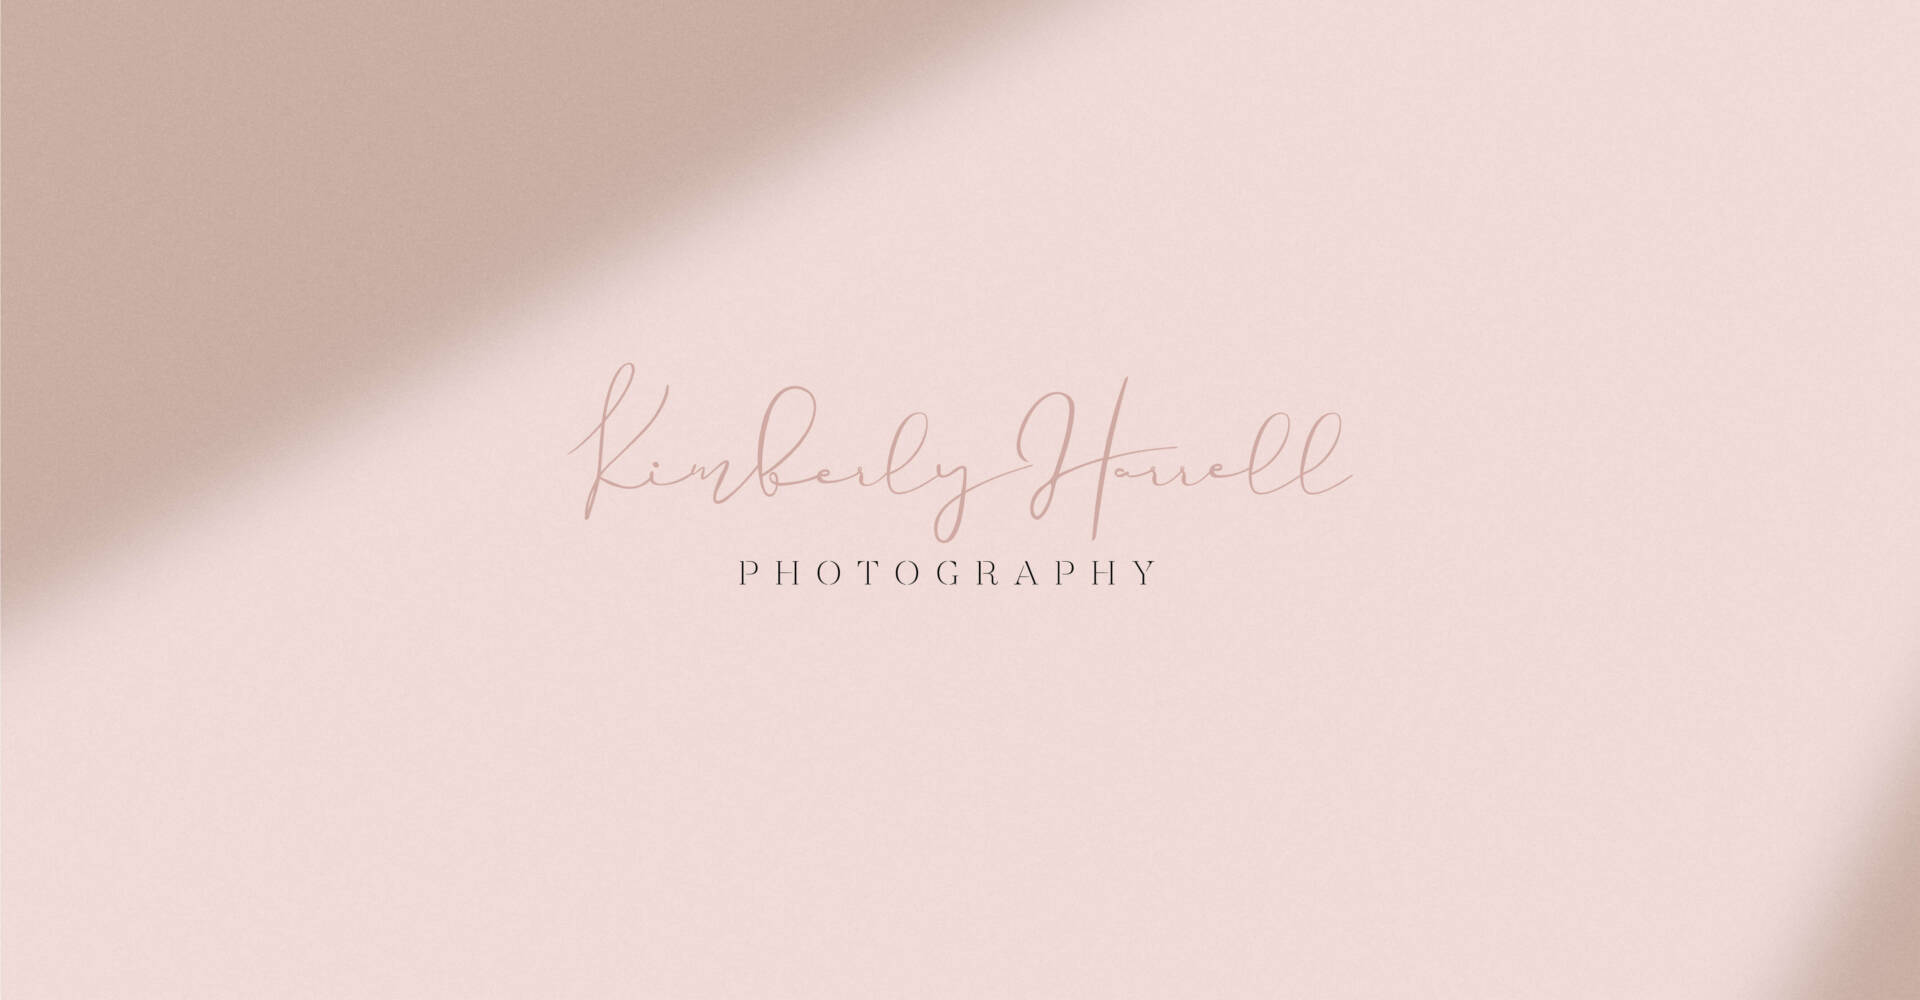 Kimberlly Harrell Photography - Custom Logo Design